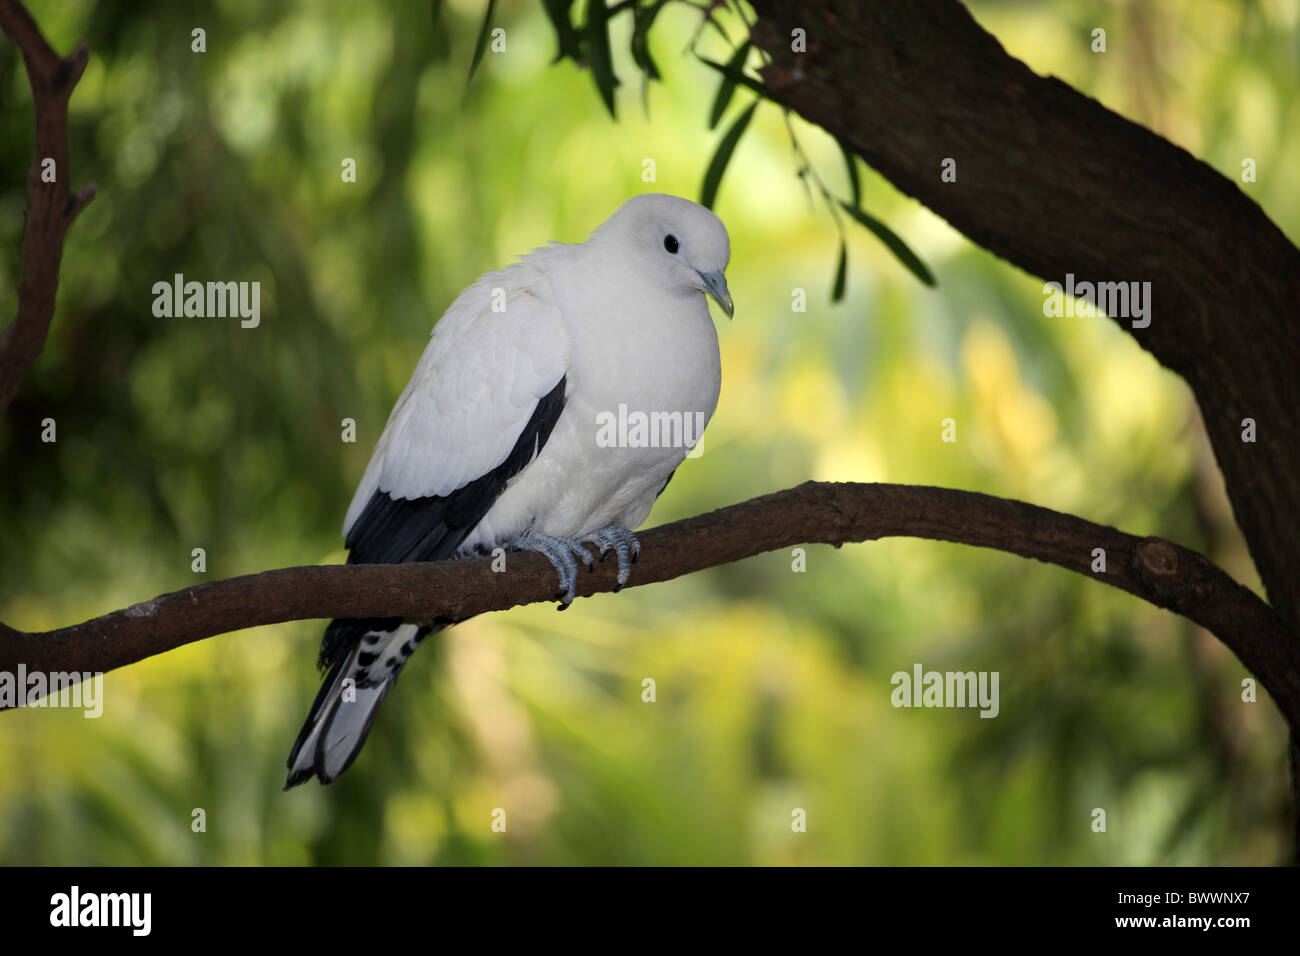 Pied Imperial-pigeon (Ducula bicolor) adulte, perché sur une branche, l'Australie Banque D'Images